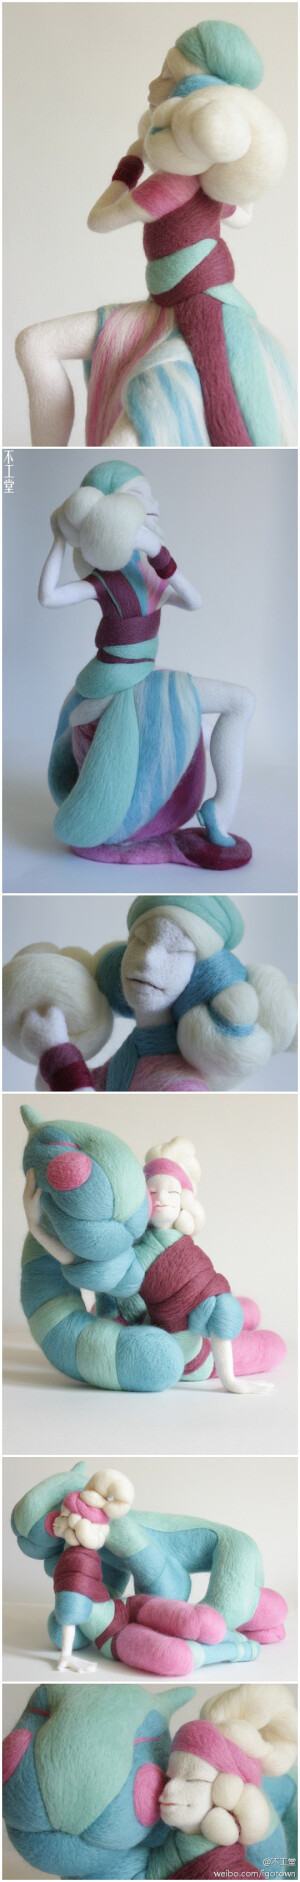 还记得我们介绍过的俄罗斯的Liudmila Vasileva（http://weibo.com/1699336787/y19Hg9iQb）吗？她的雕塑风格羊毛毡作品让人印象深刻。下面两个是她的新作，同样的风格，更成熟的技巧，让我们欣赏下。